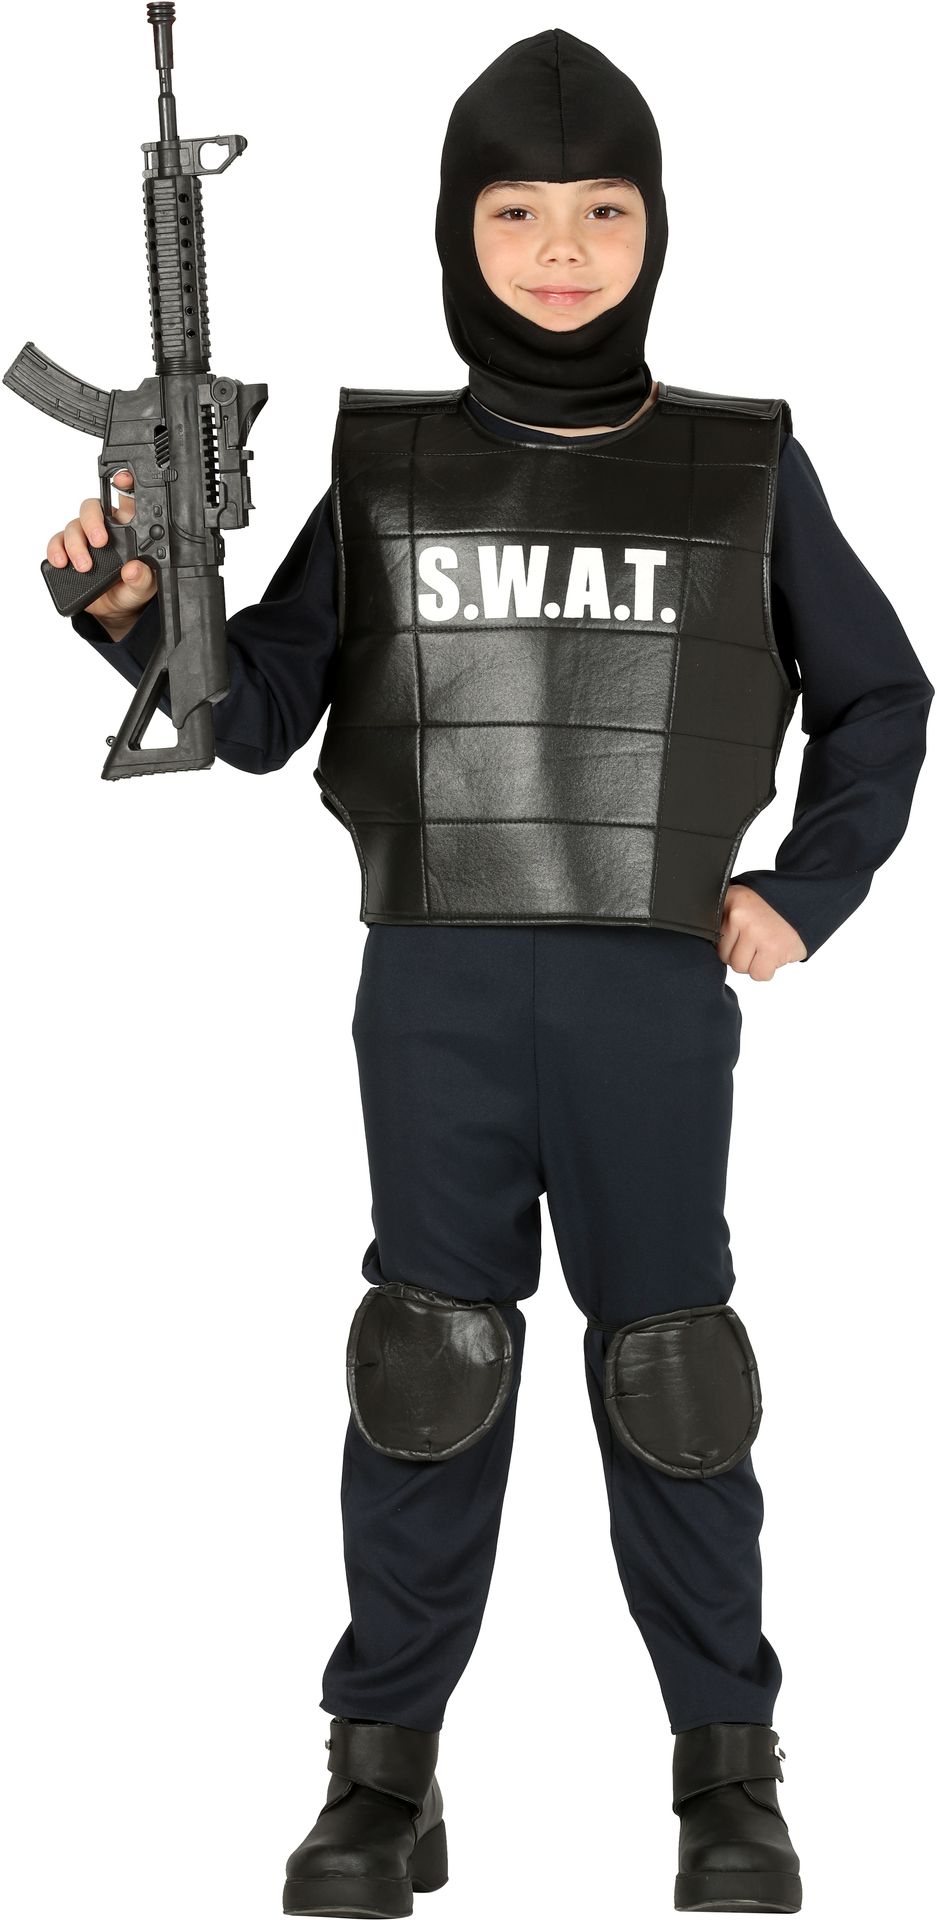 Politie SWAT kostuum jongen